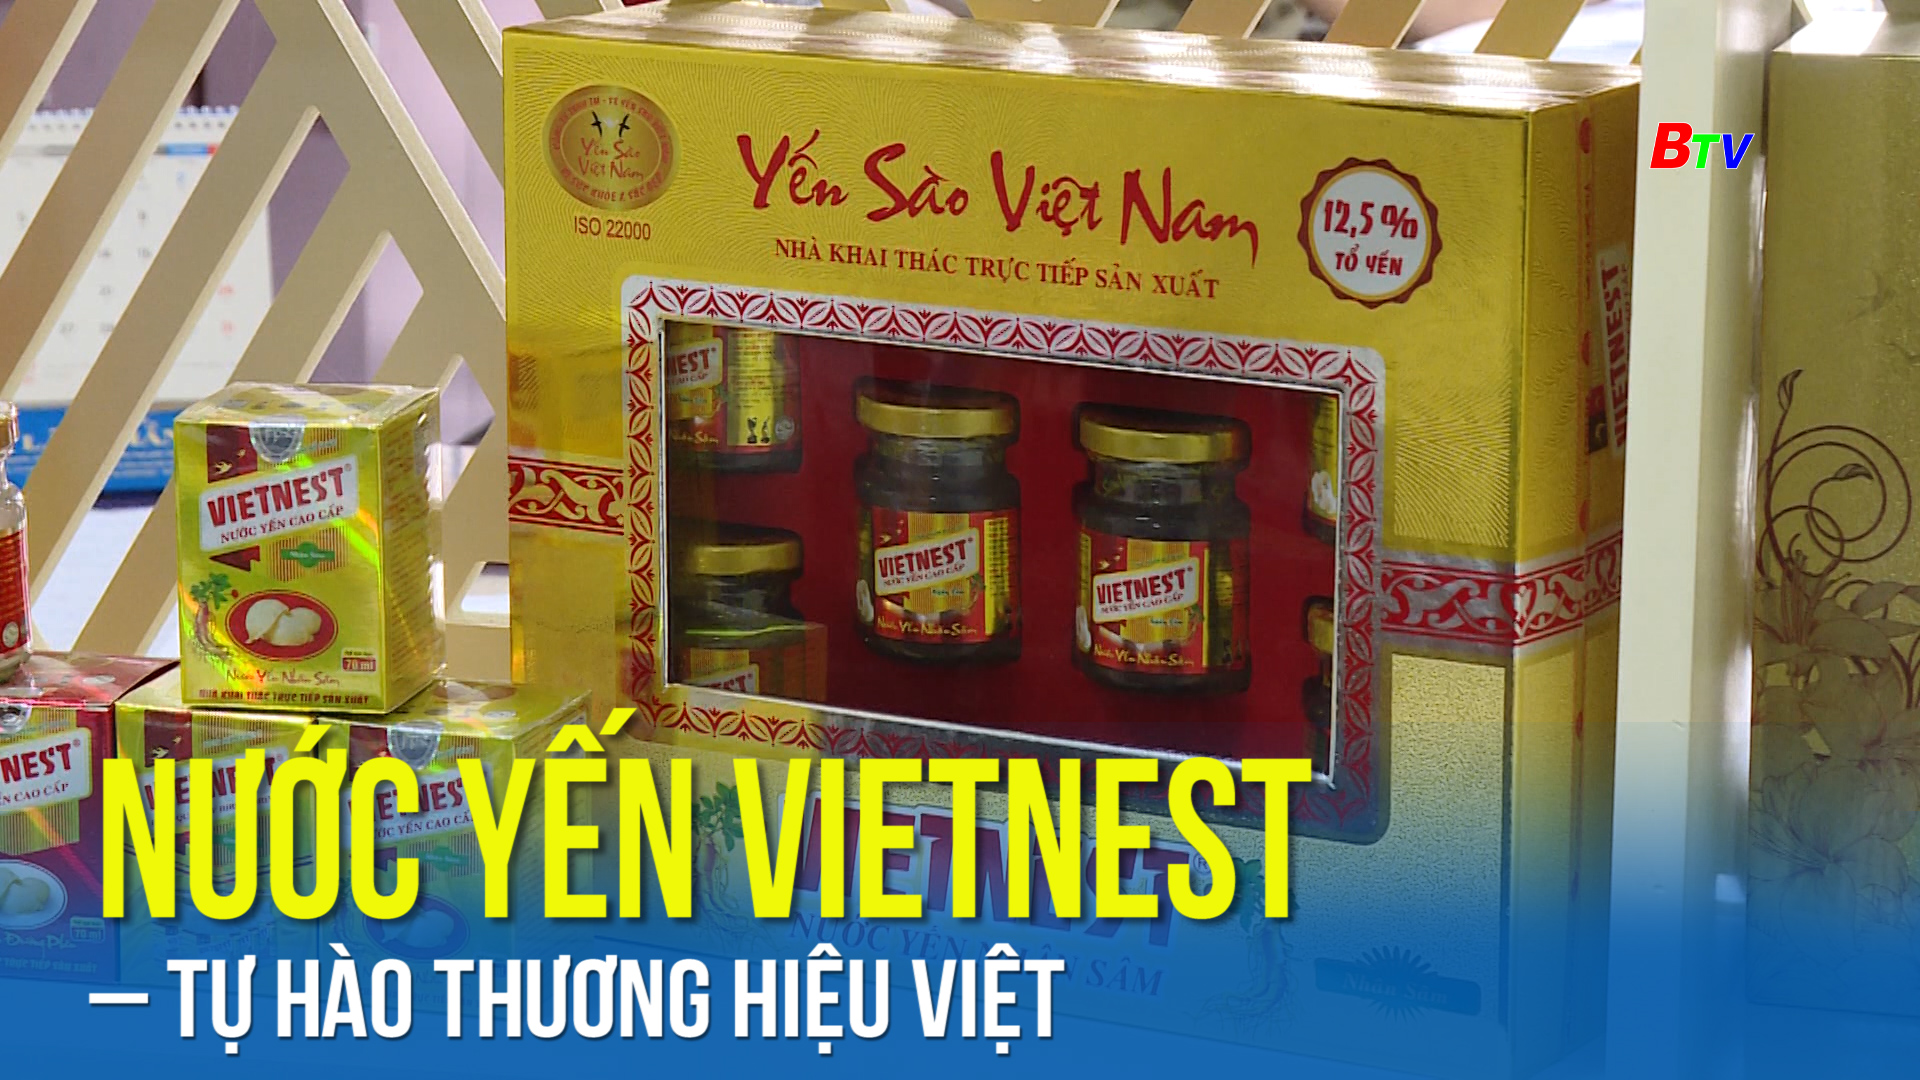 Nước yến Vietnest tự hào thương hiệu Việt  